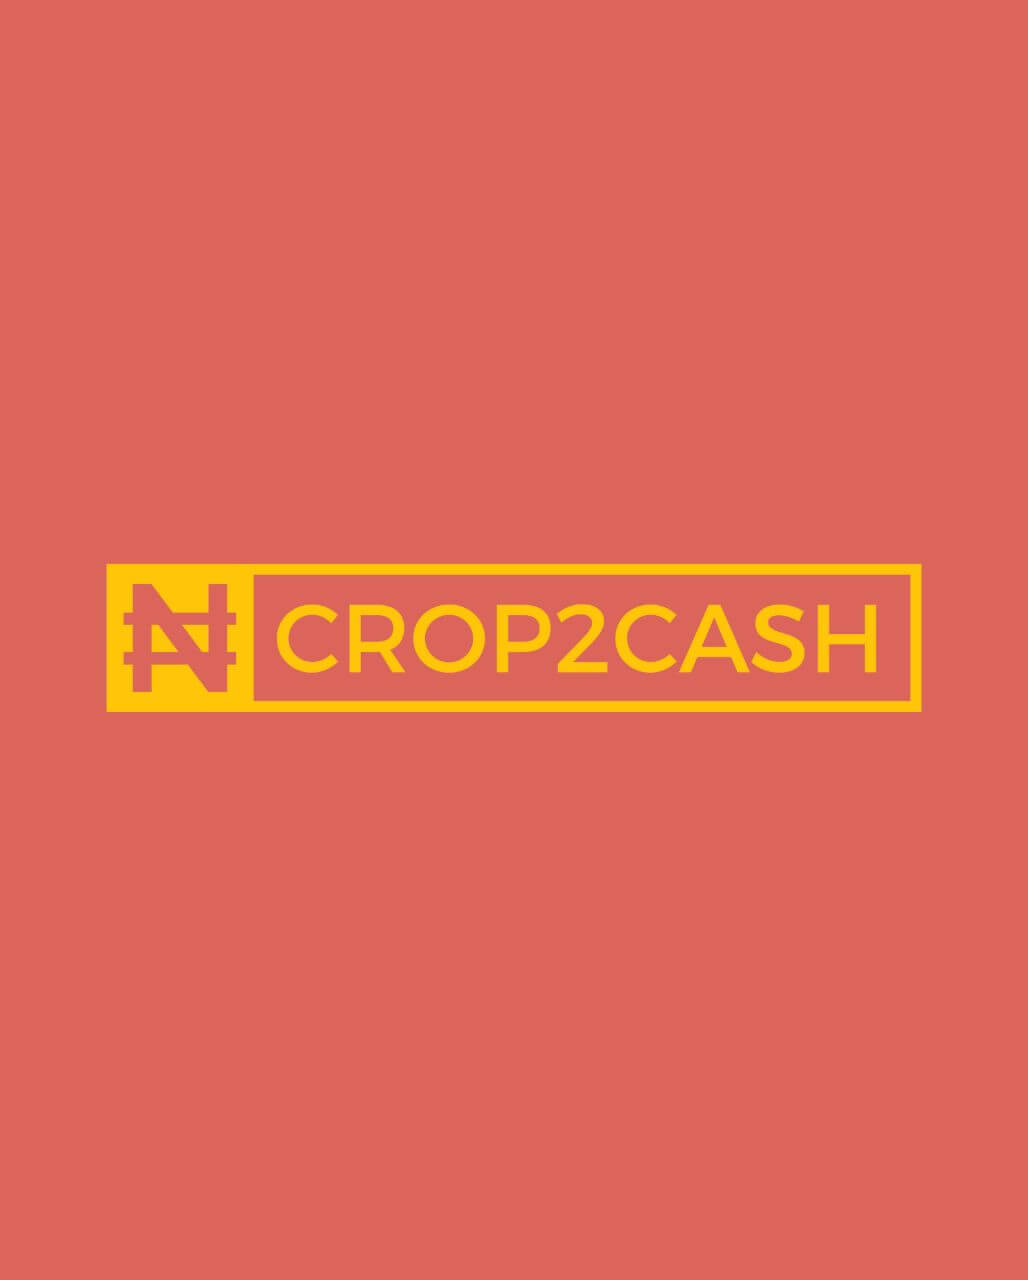 Crop2Cash logo